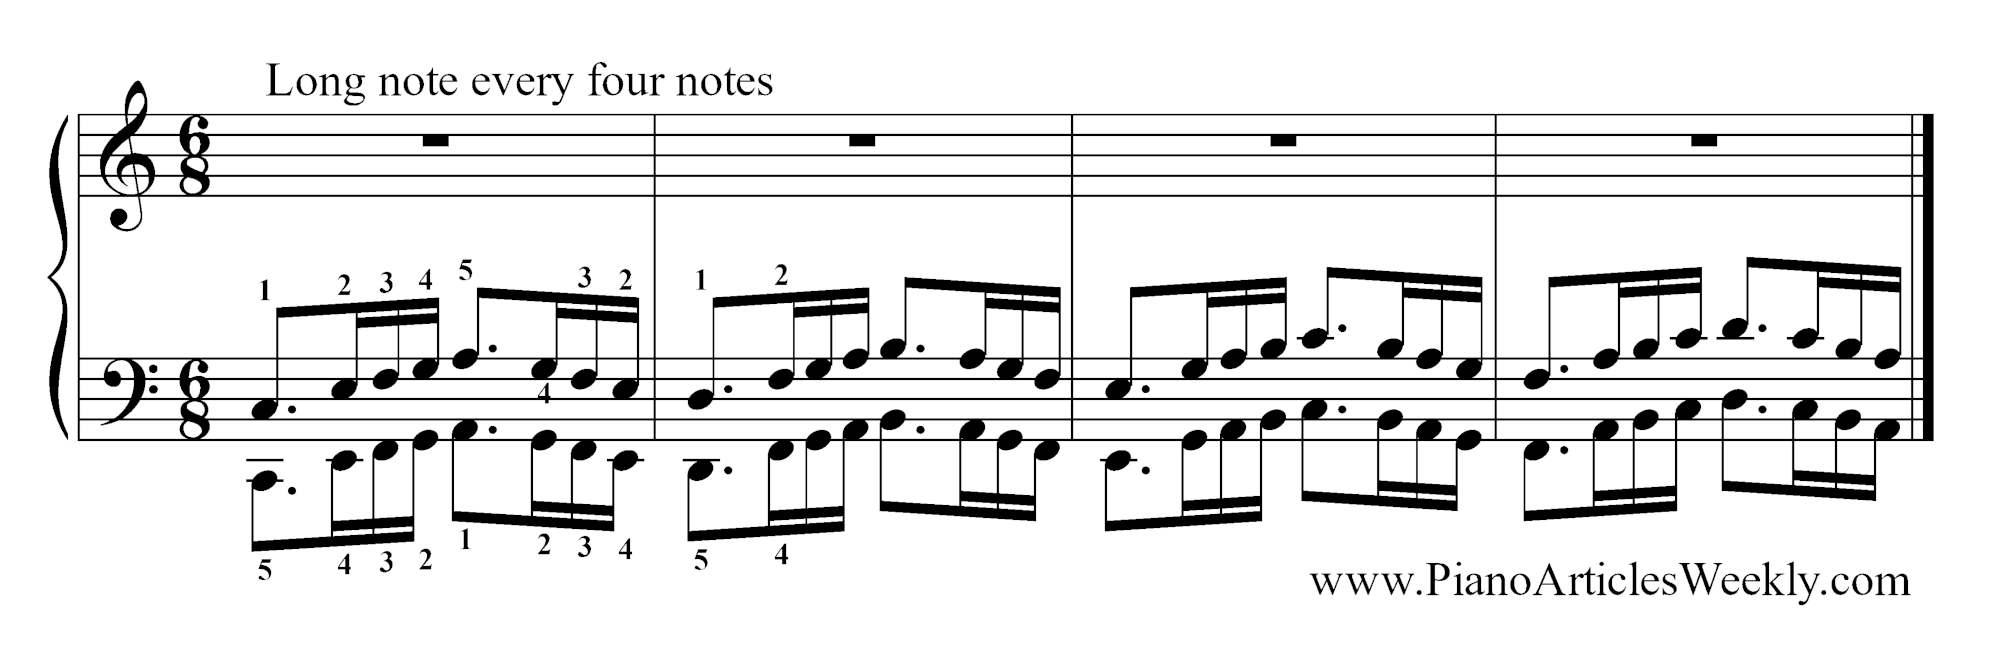 Hanon Exercies - a long note every four notes